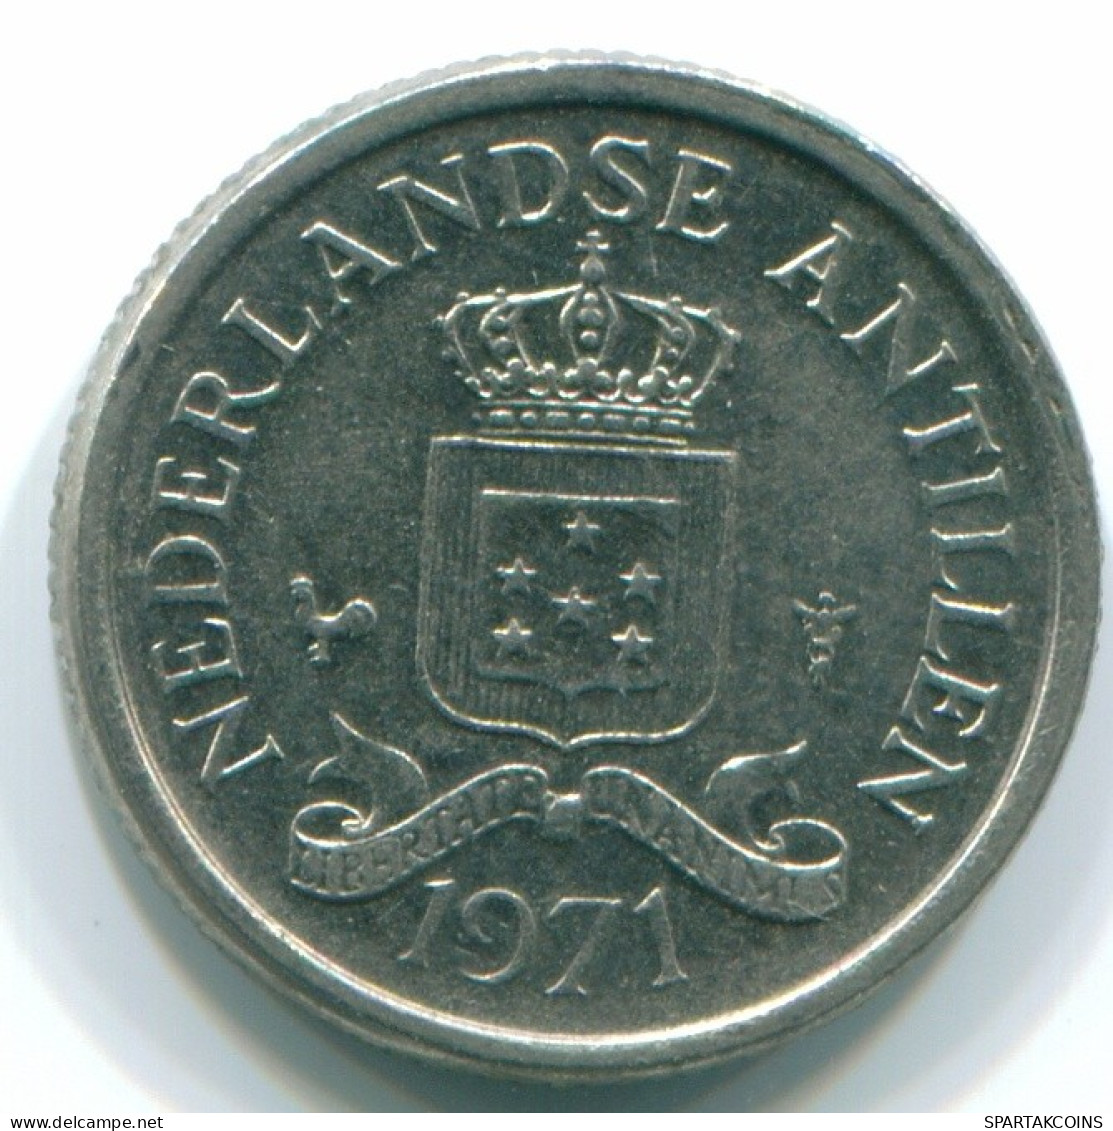 10 CENTS 1971 NETHERLANDS ANTILLES Nickel Colonial Coin #S13432.U.A - Niederländische Antillen